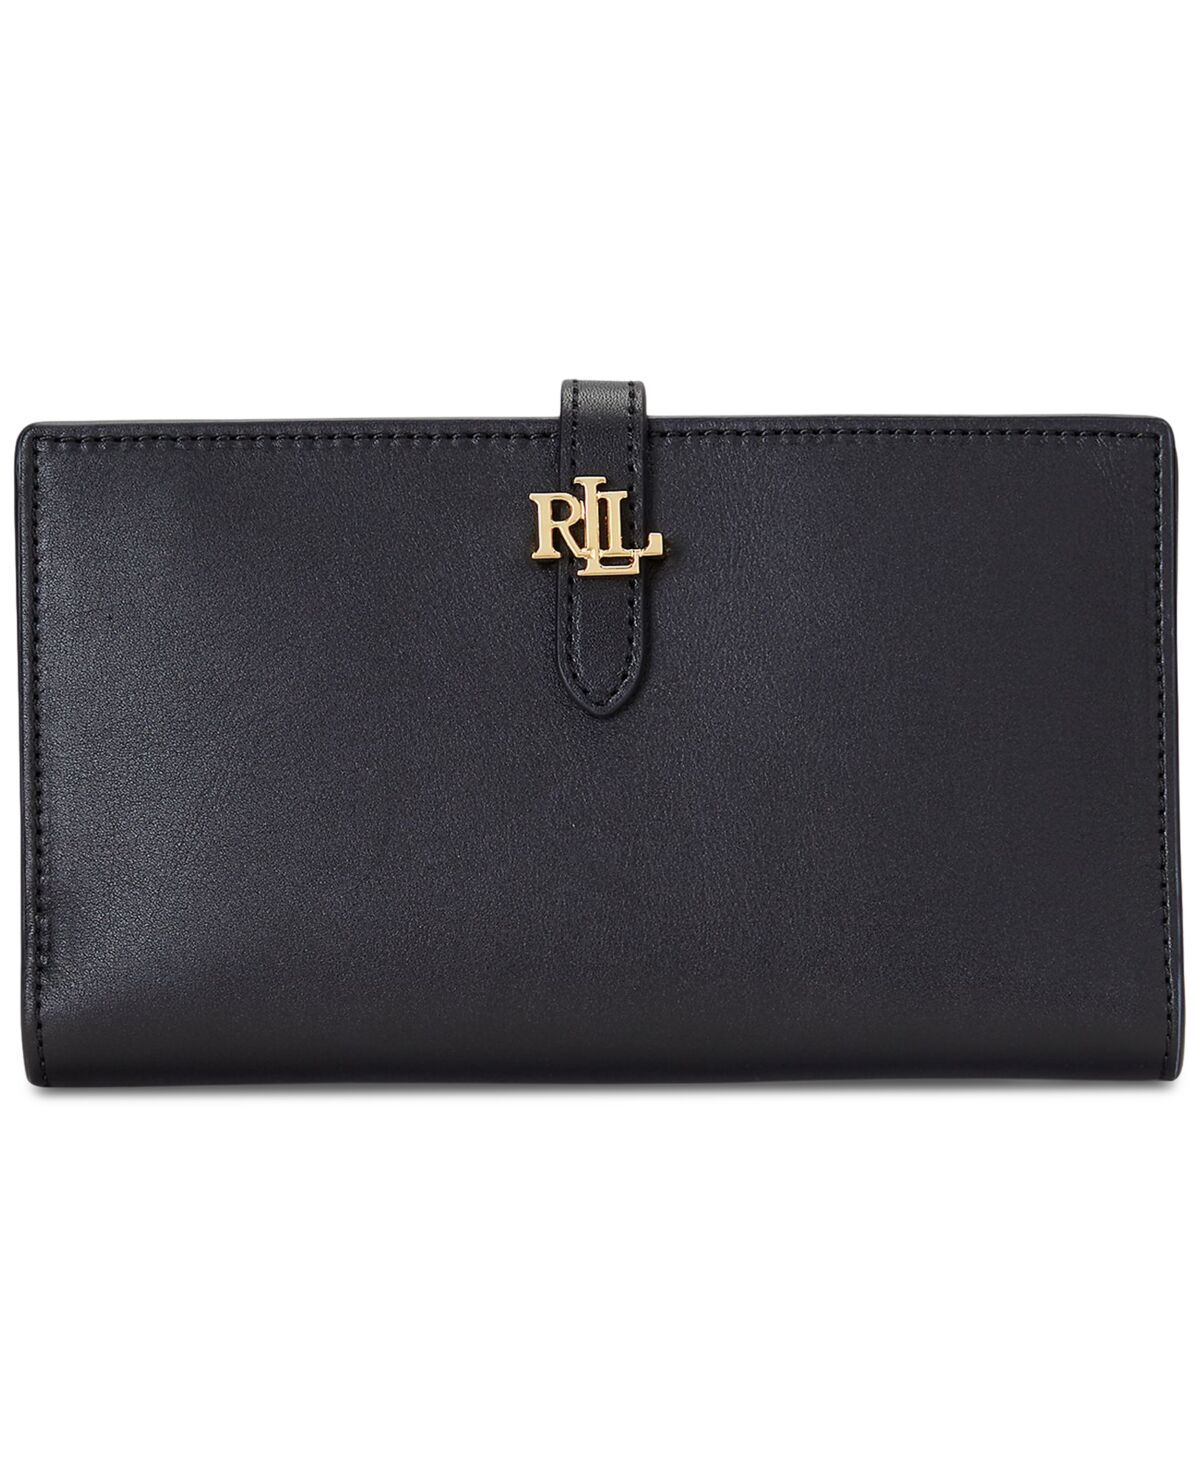 Ralph Lauren Lauren Ralph Lauren Logo Leather Bifold Wallet - Black